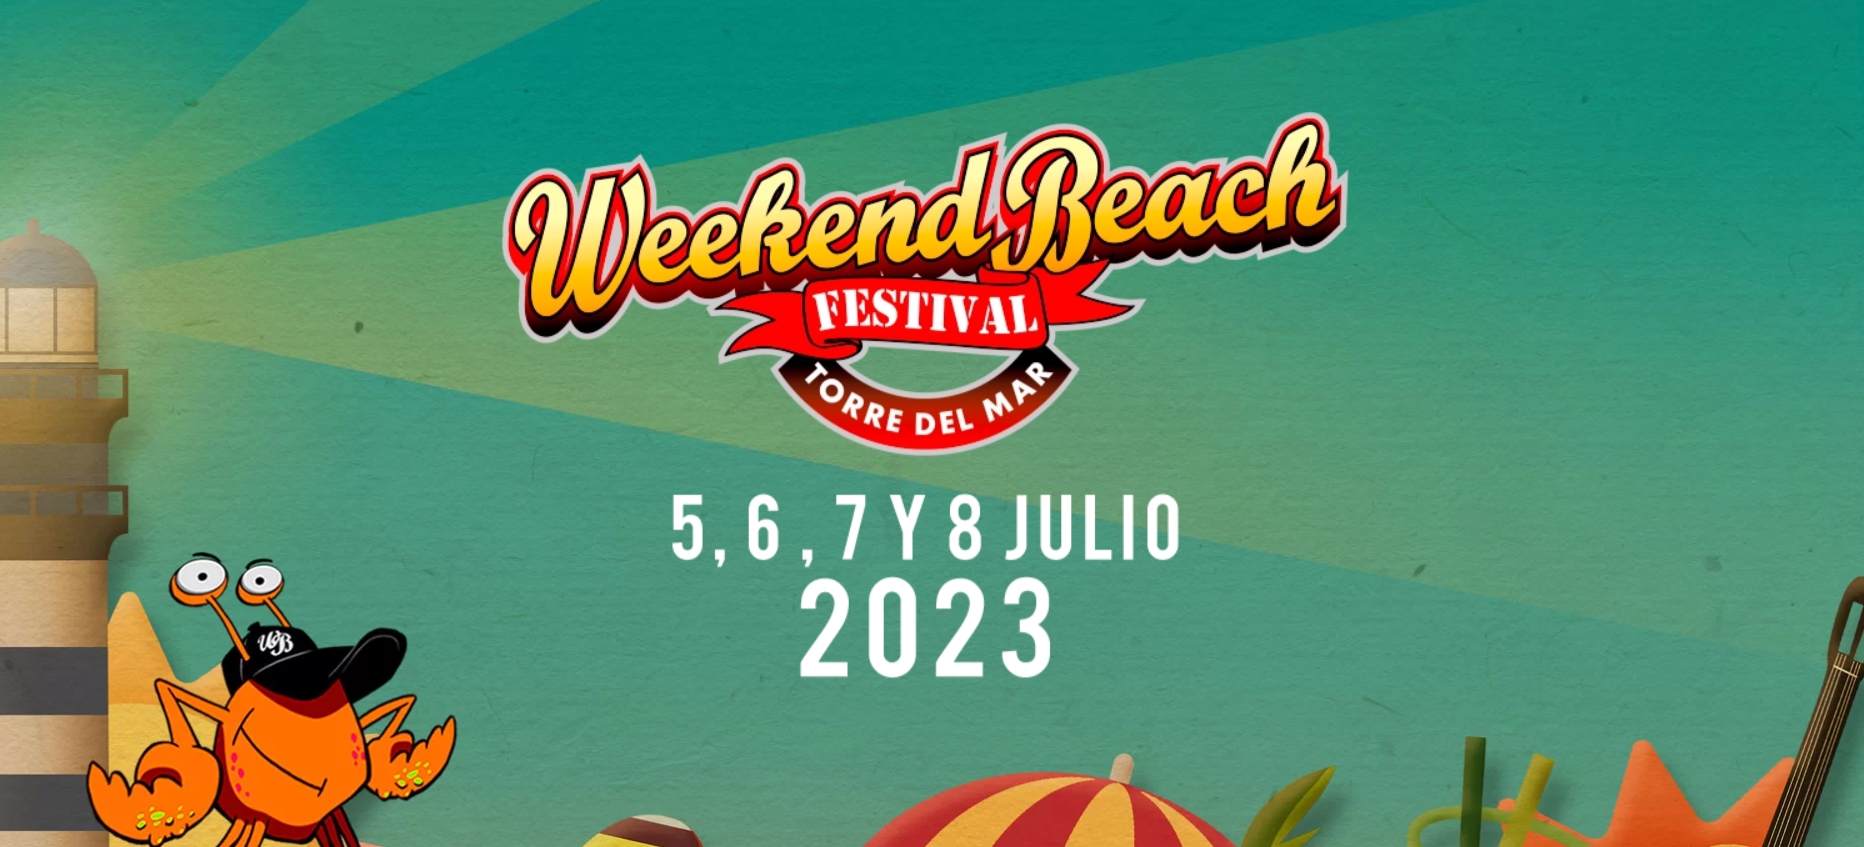 Weekend Beach Festival Torre del Mar, by Johnny Zuri. 2